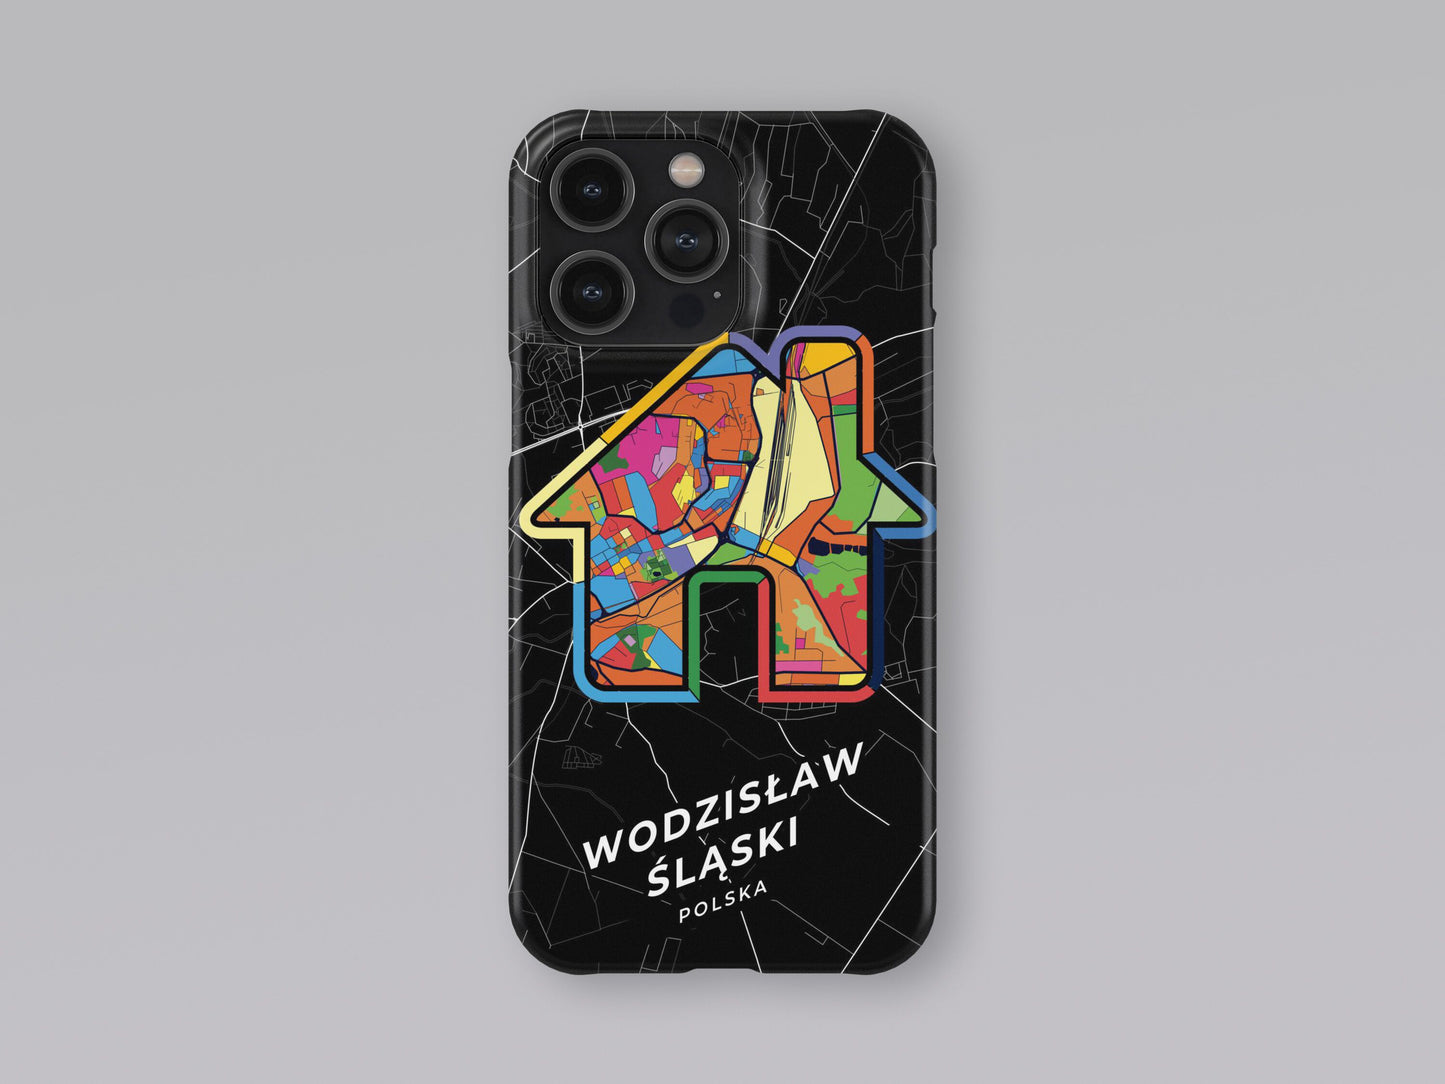 Wodzisław Śląski Poland slim phone case with colorful icon 3